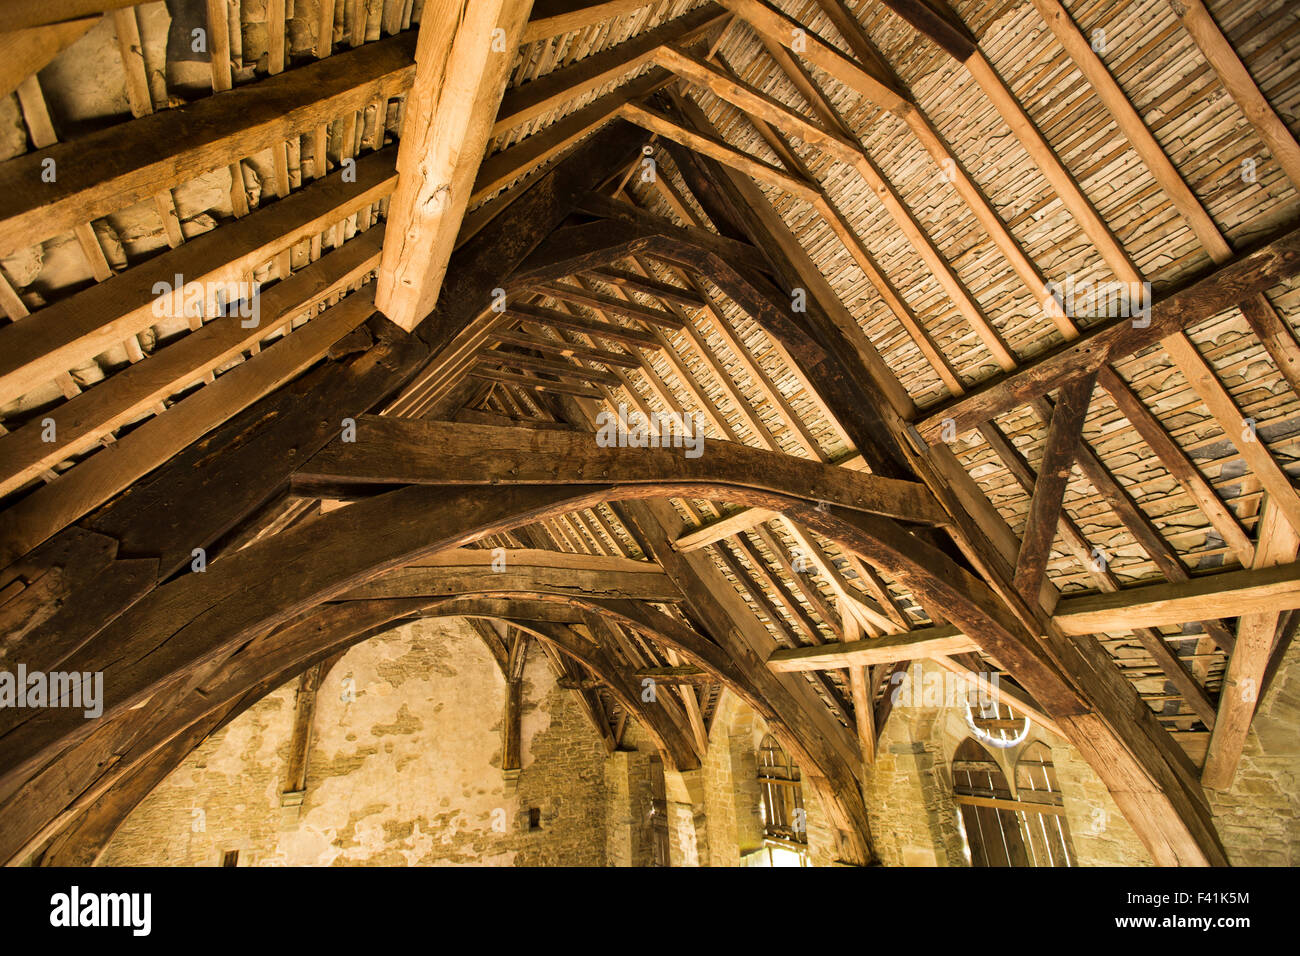 Royaume-uni, Angleterre, Shropshire, Craven Arms, Château Stokesay, grande salle, charpente en bois Banque D'Images